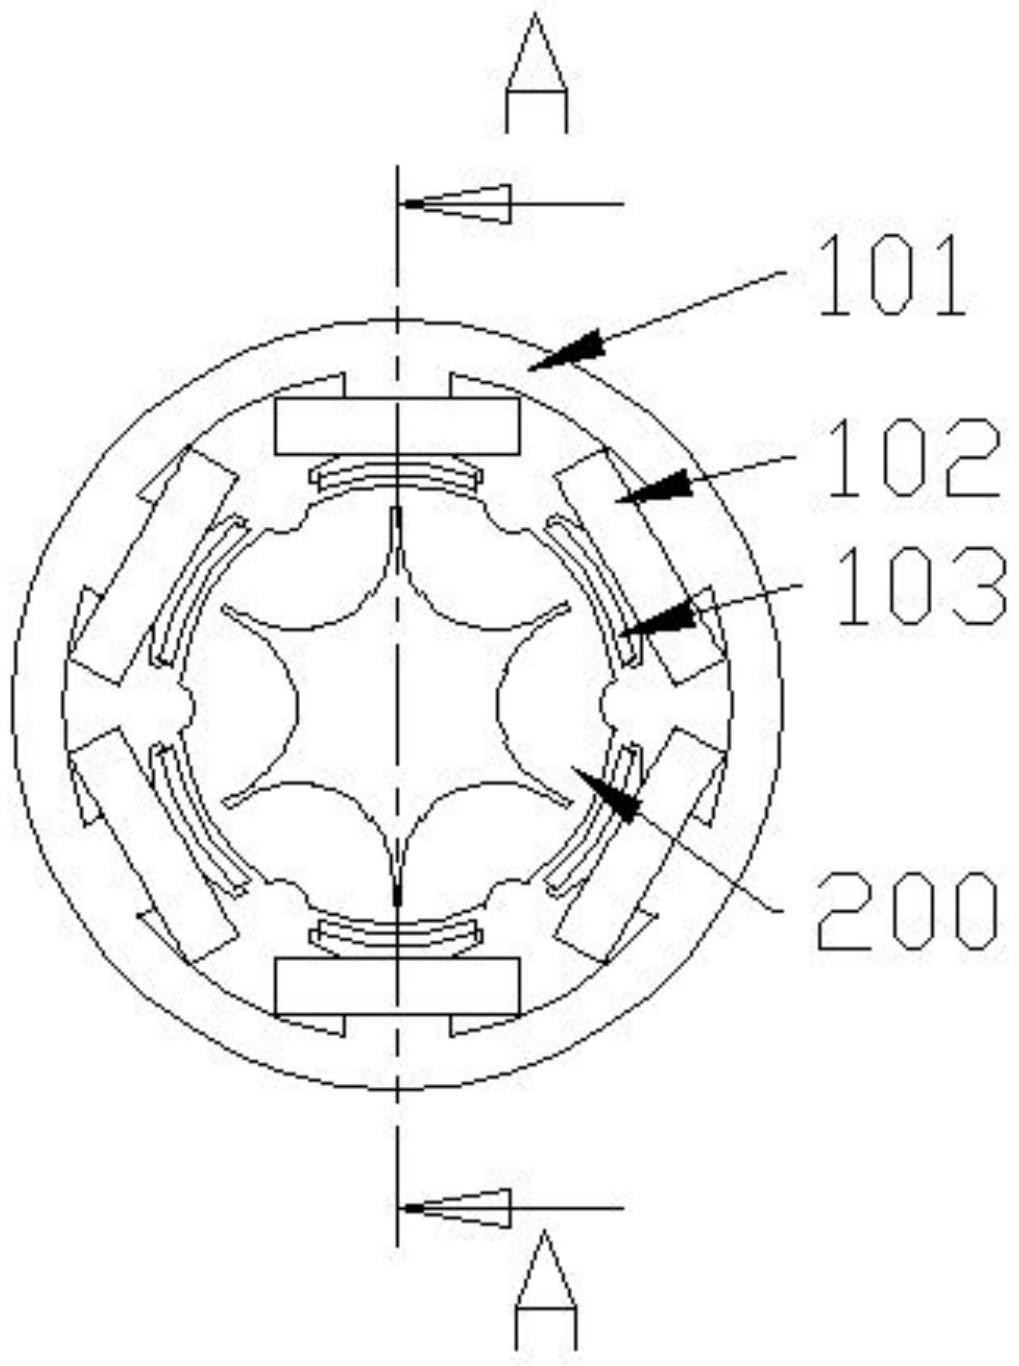 一种圆筒型动铁式永磁直线发电机